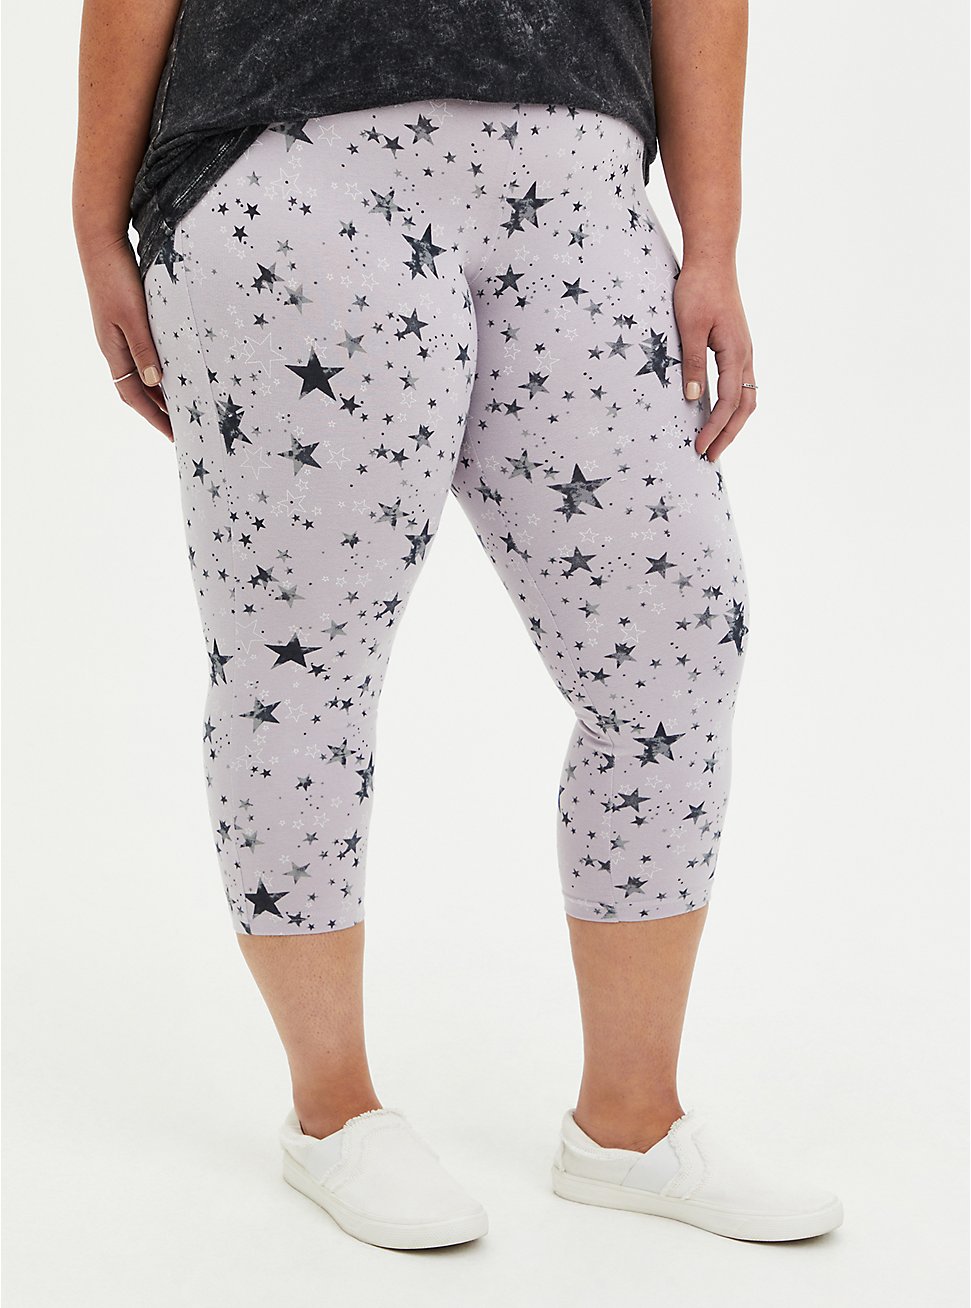 Plus Size Capri Premium Legging - Star Print, MULTI, hi-res